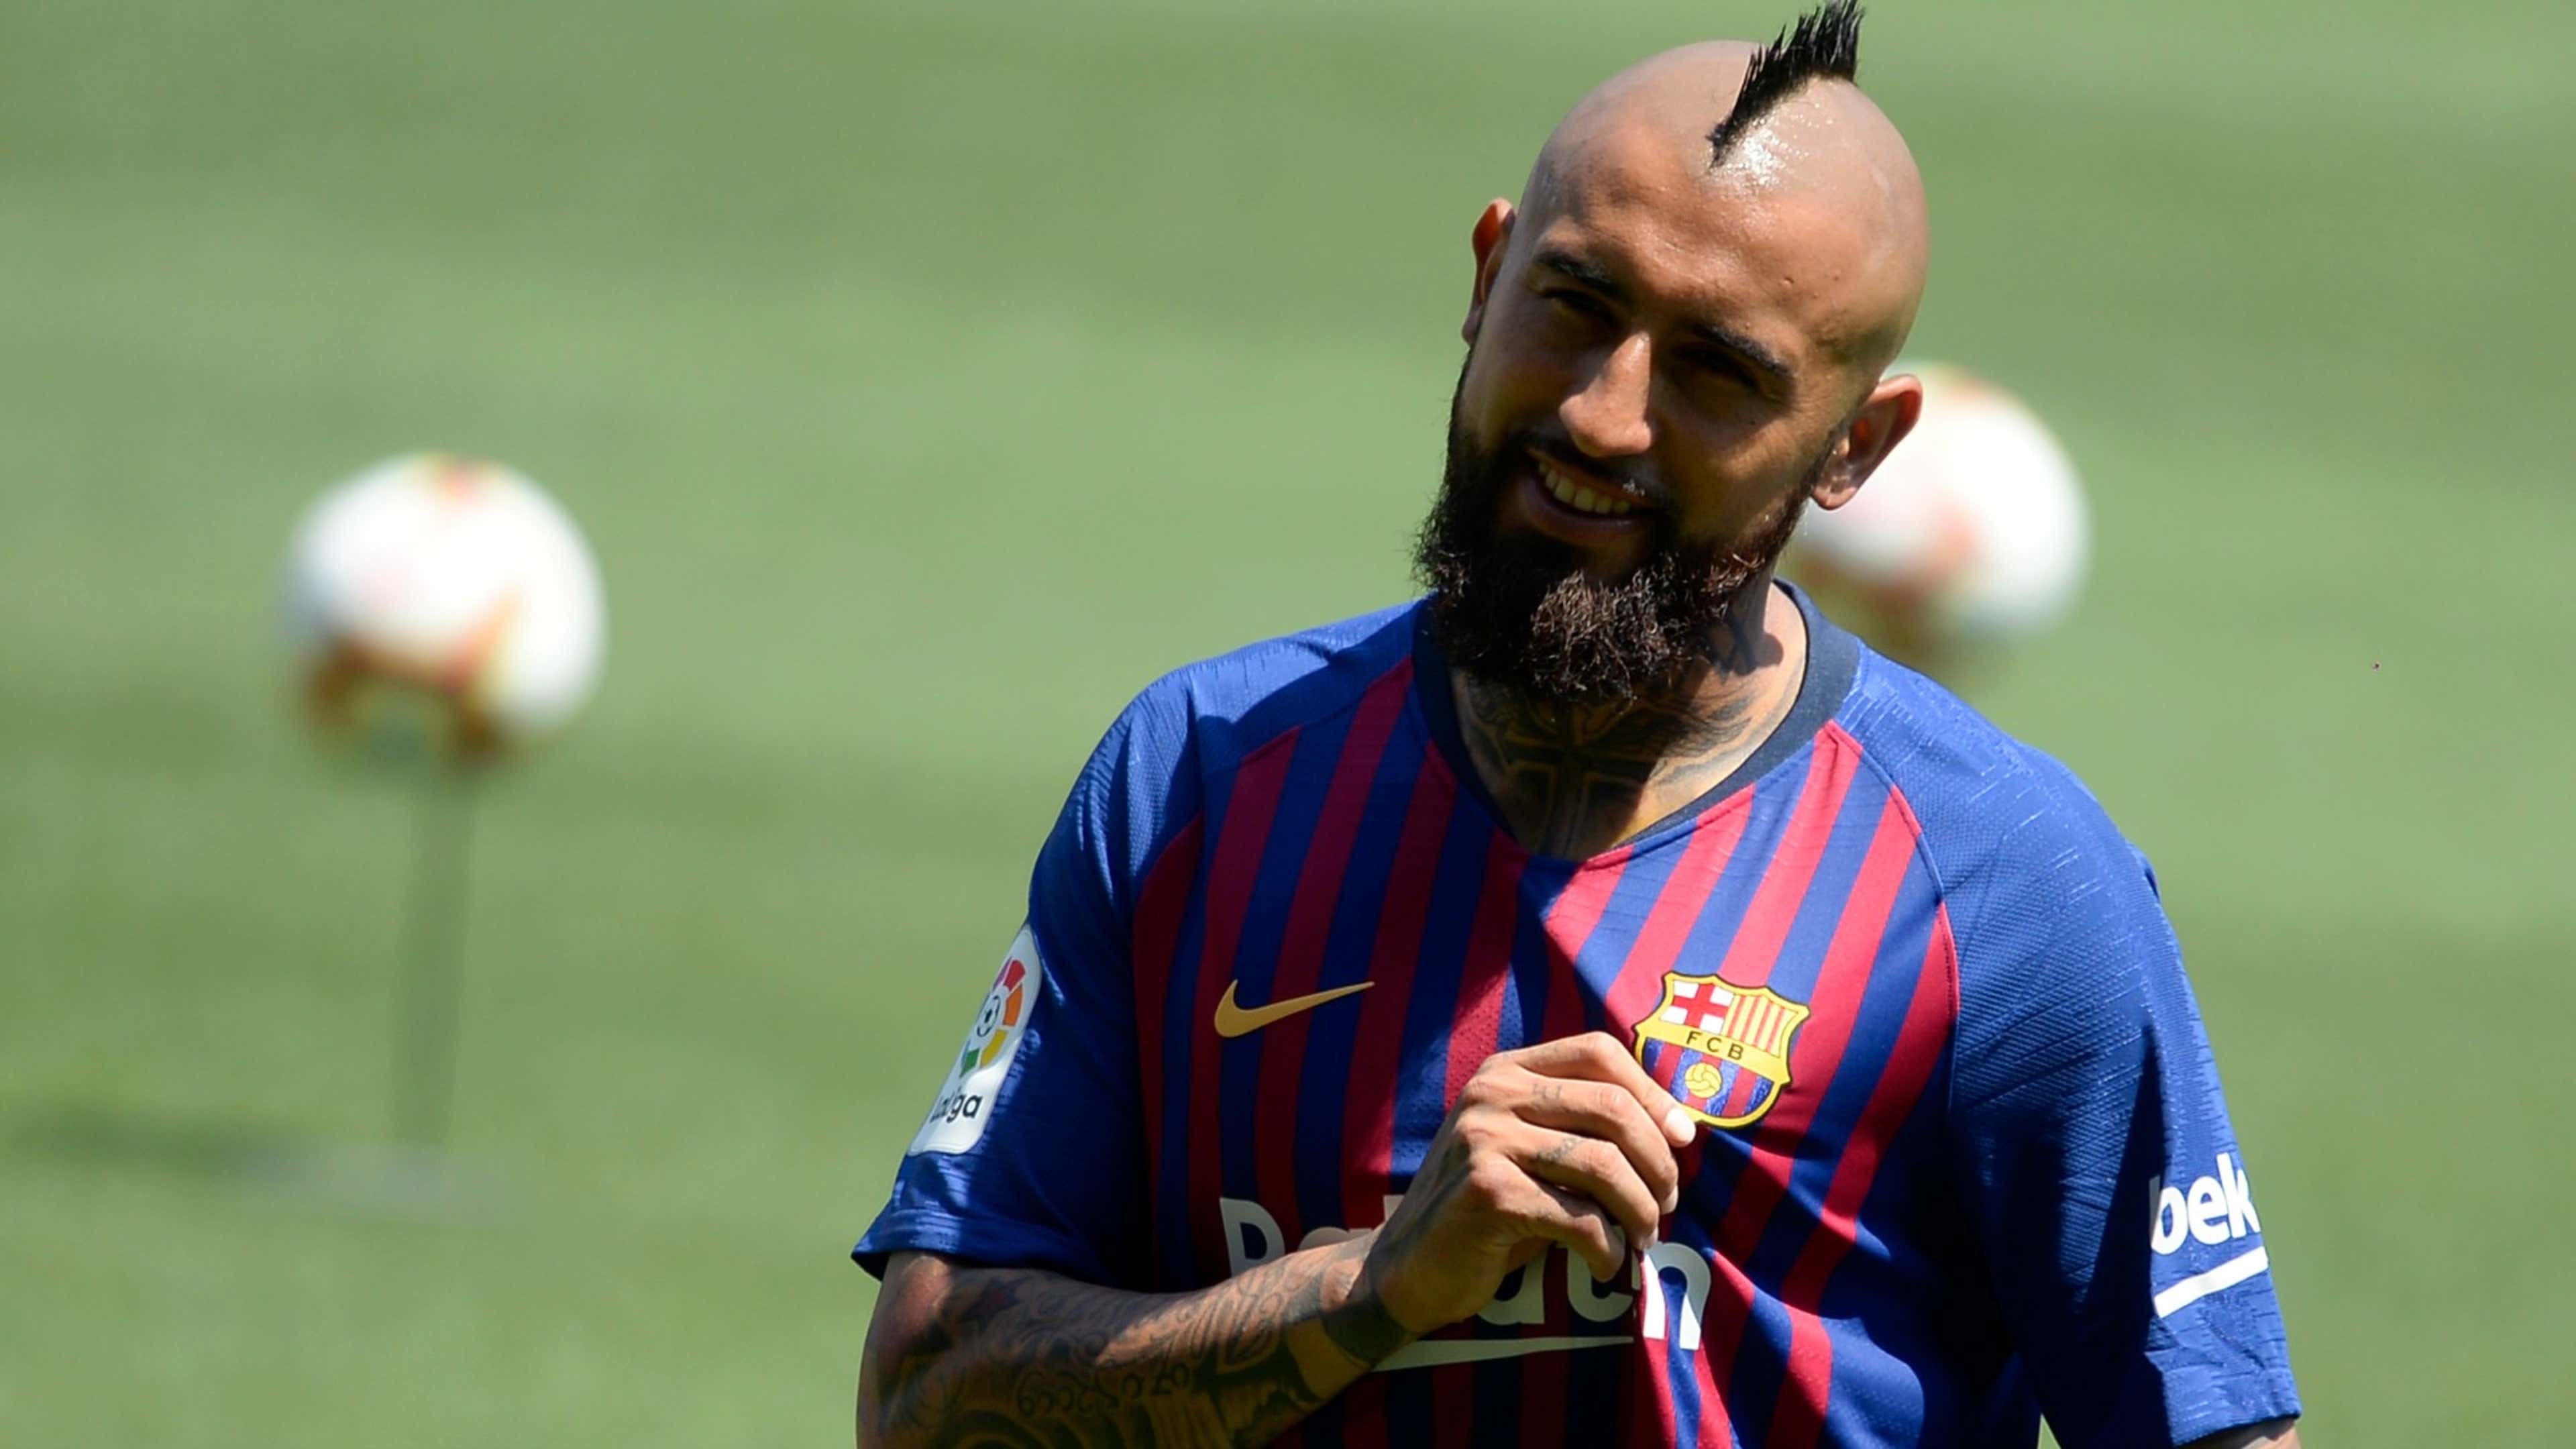 Qué camiseta usará Arturo Vidal en el Barcelona? Goal.com Espana